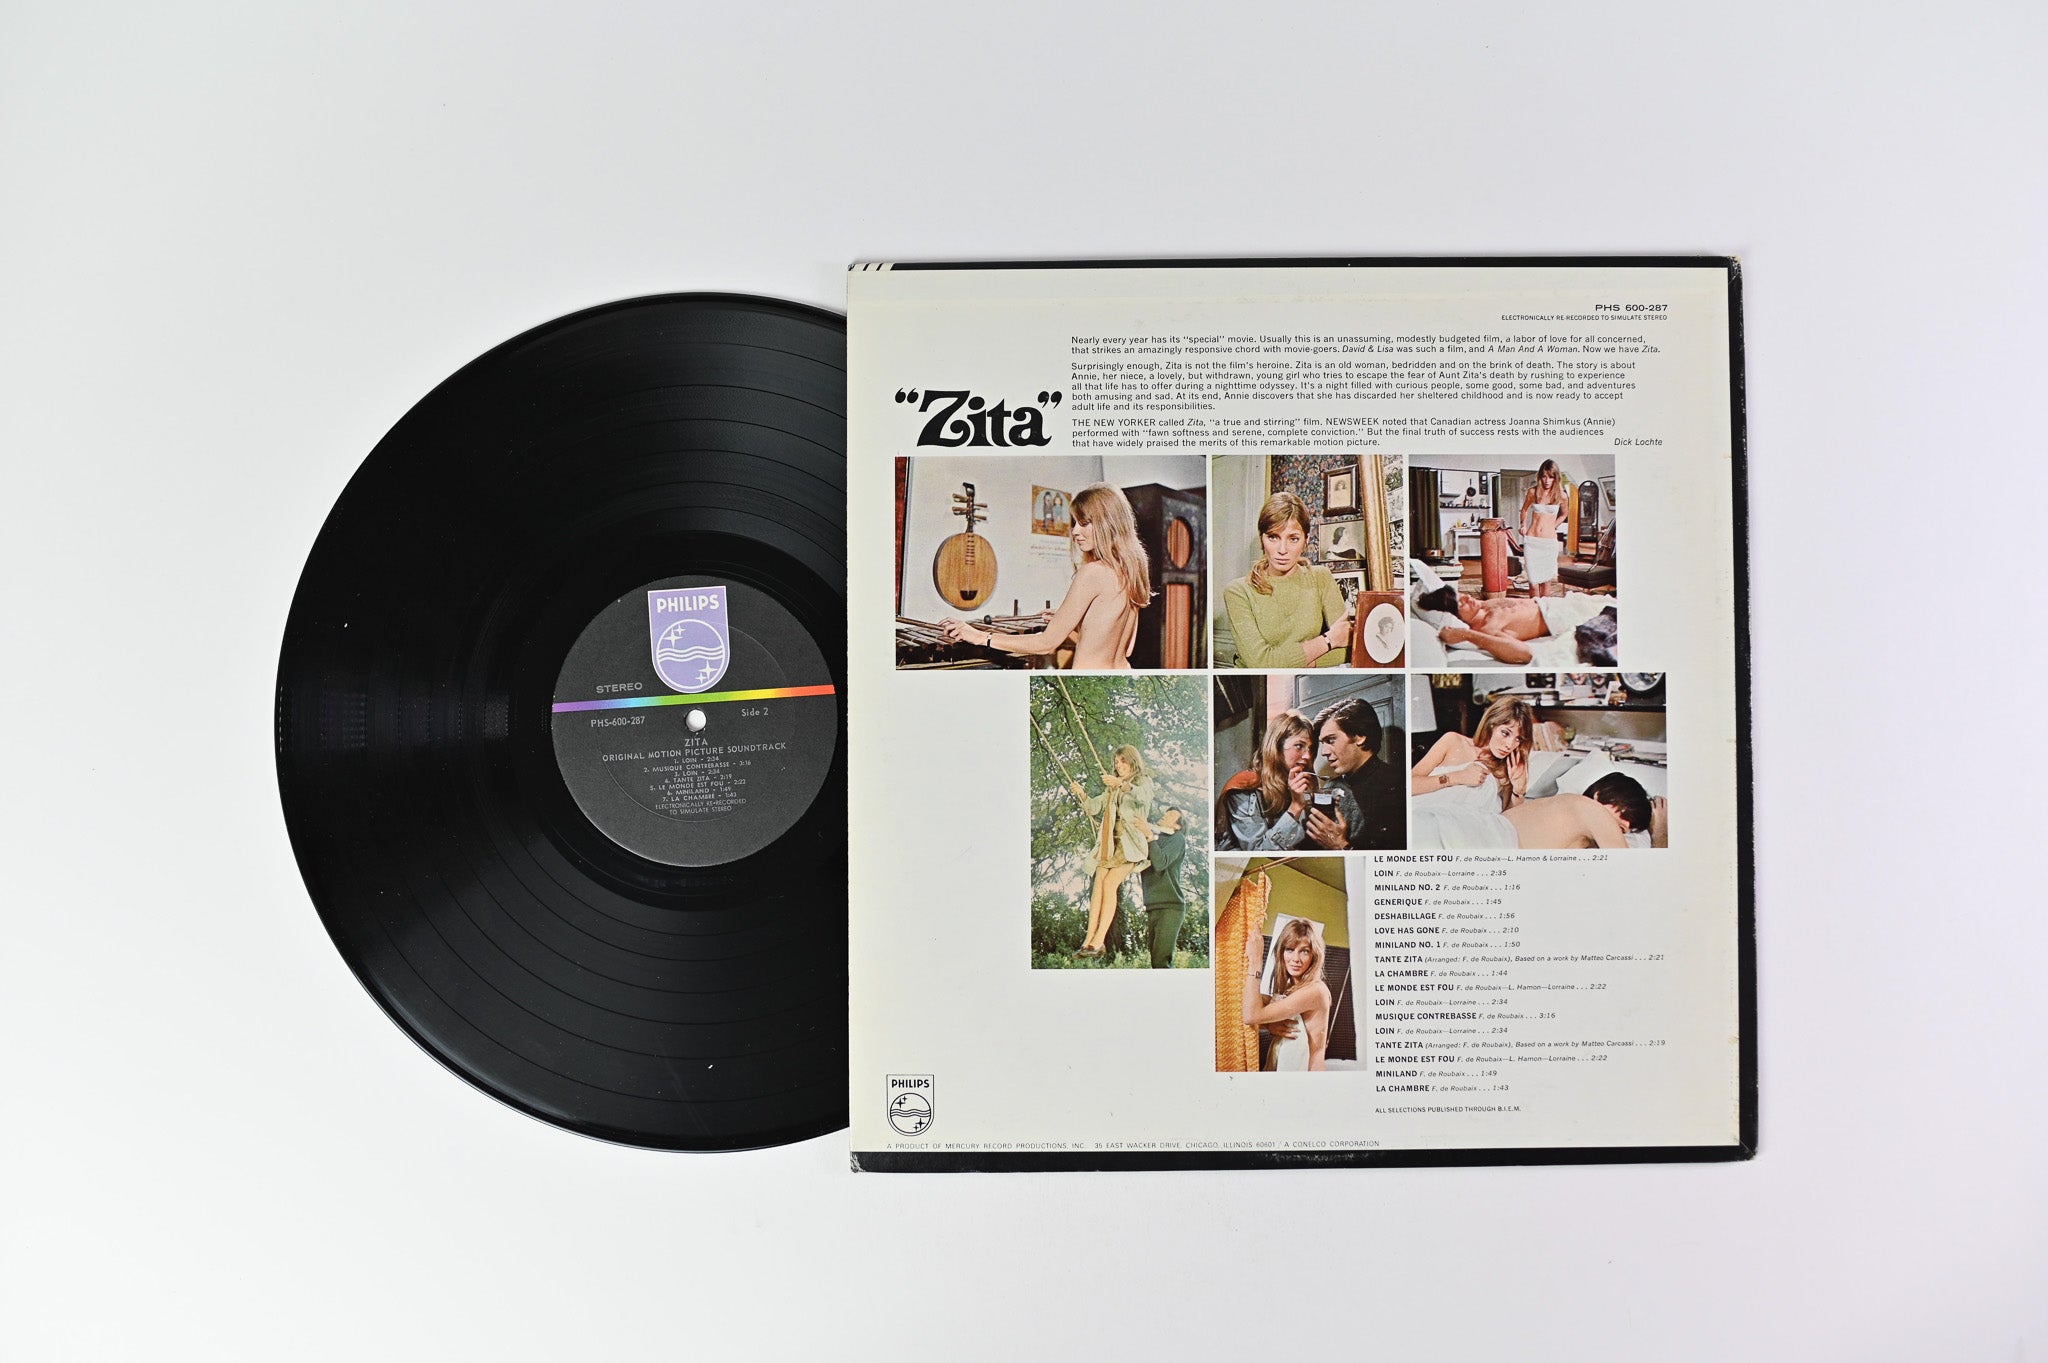 François De Roubaix - Zita - Original Motion Picture Soundtrack on Philips